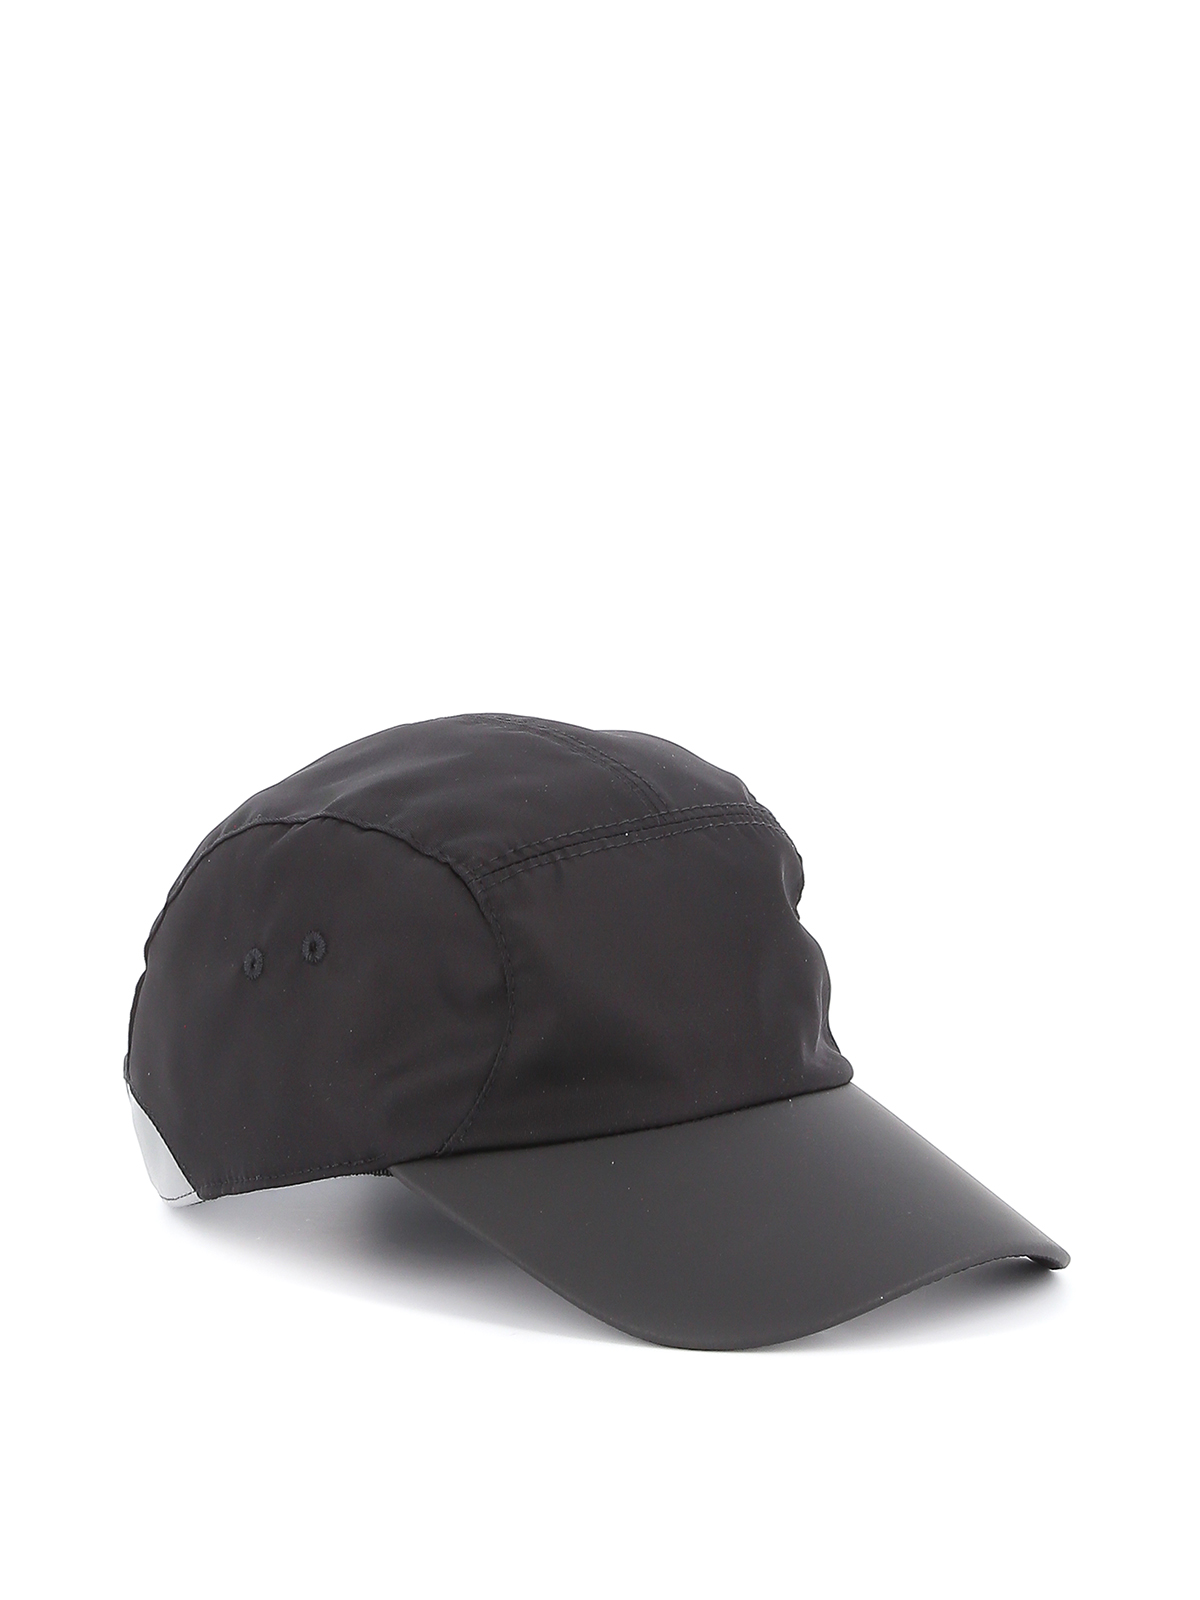 Hats & caps Canali - Nylon baseball cap - YA00007H036110 | iKRIX.com